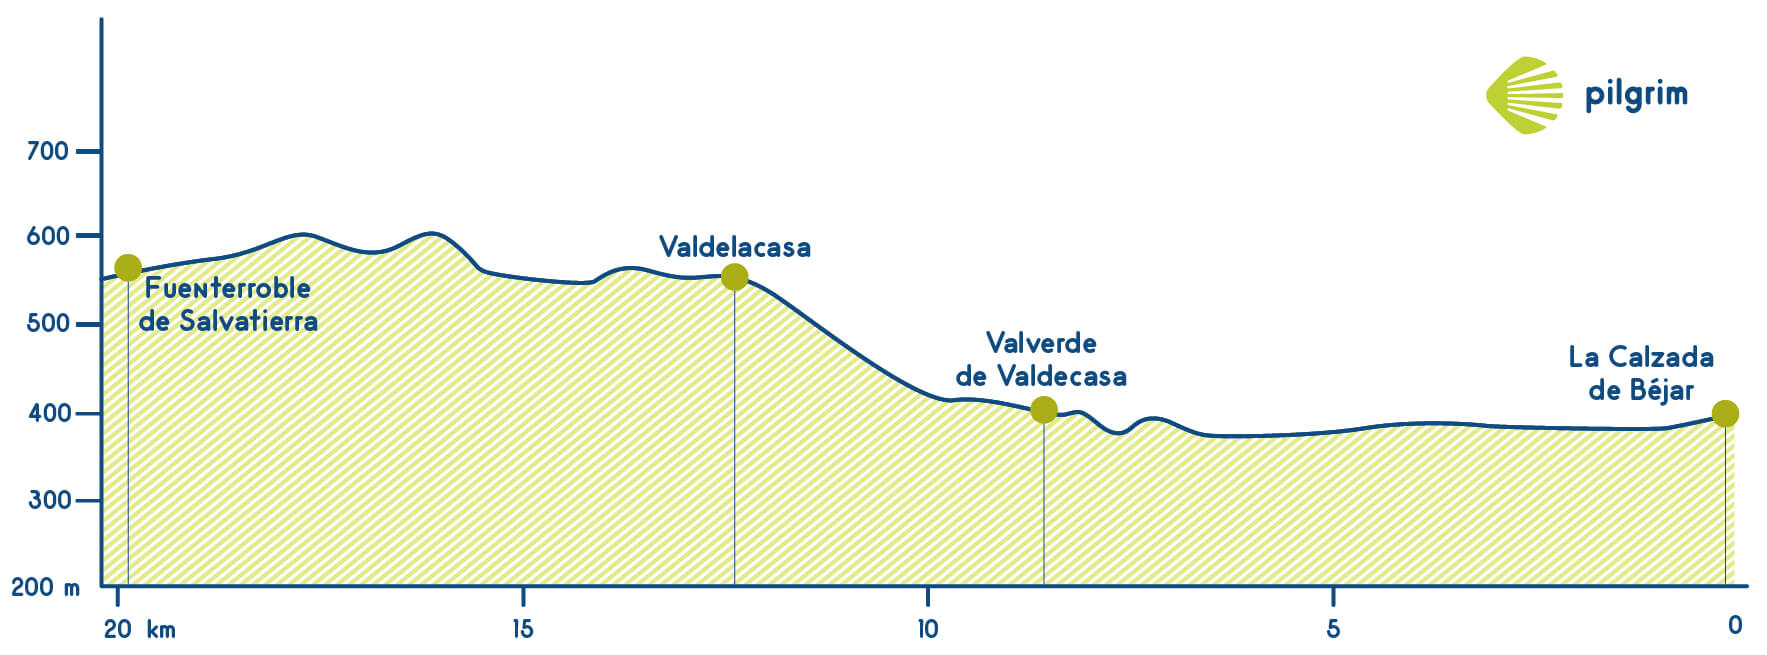 Stage 17 Vía de la Plata